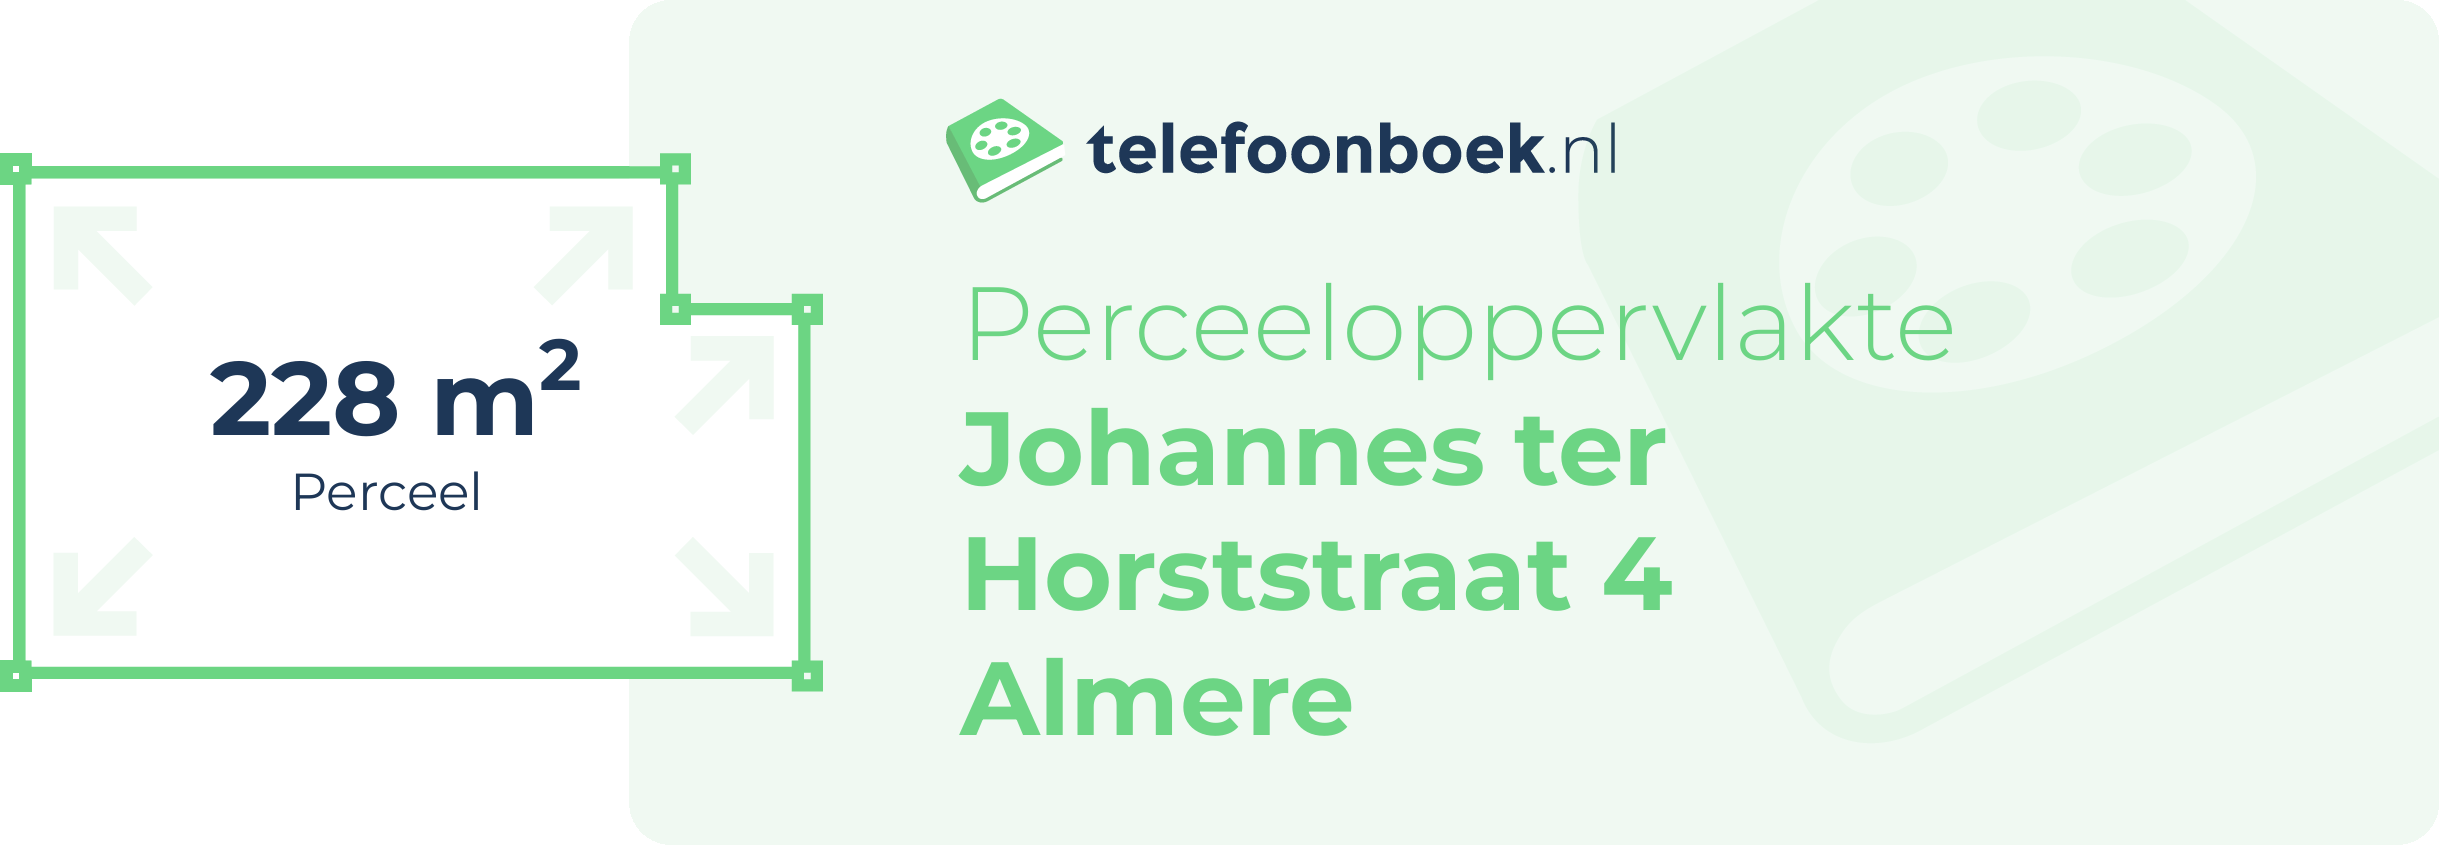 Perceeloppervlakte Johannes Ter Horststraat 4 Almere